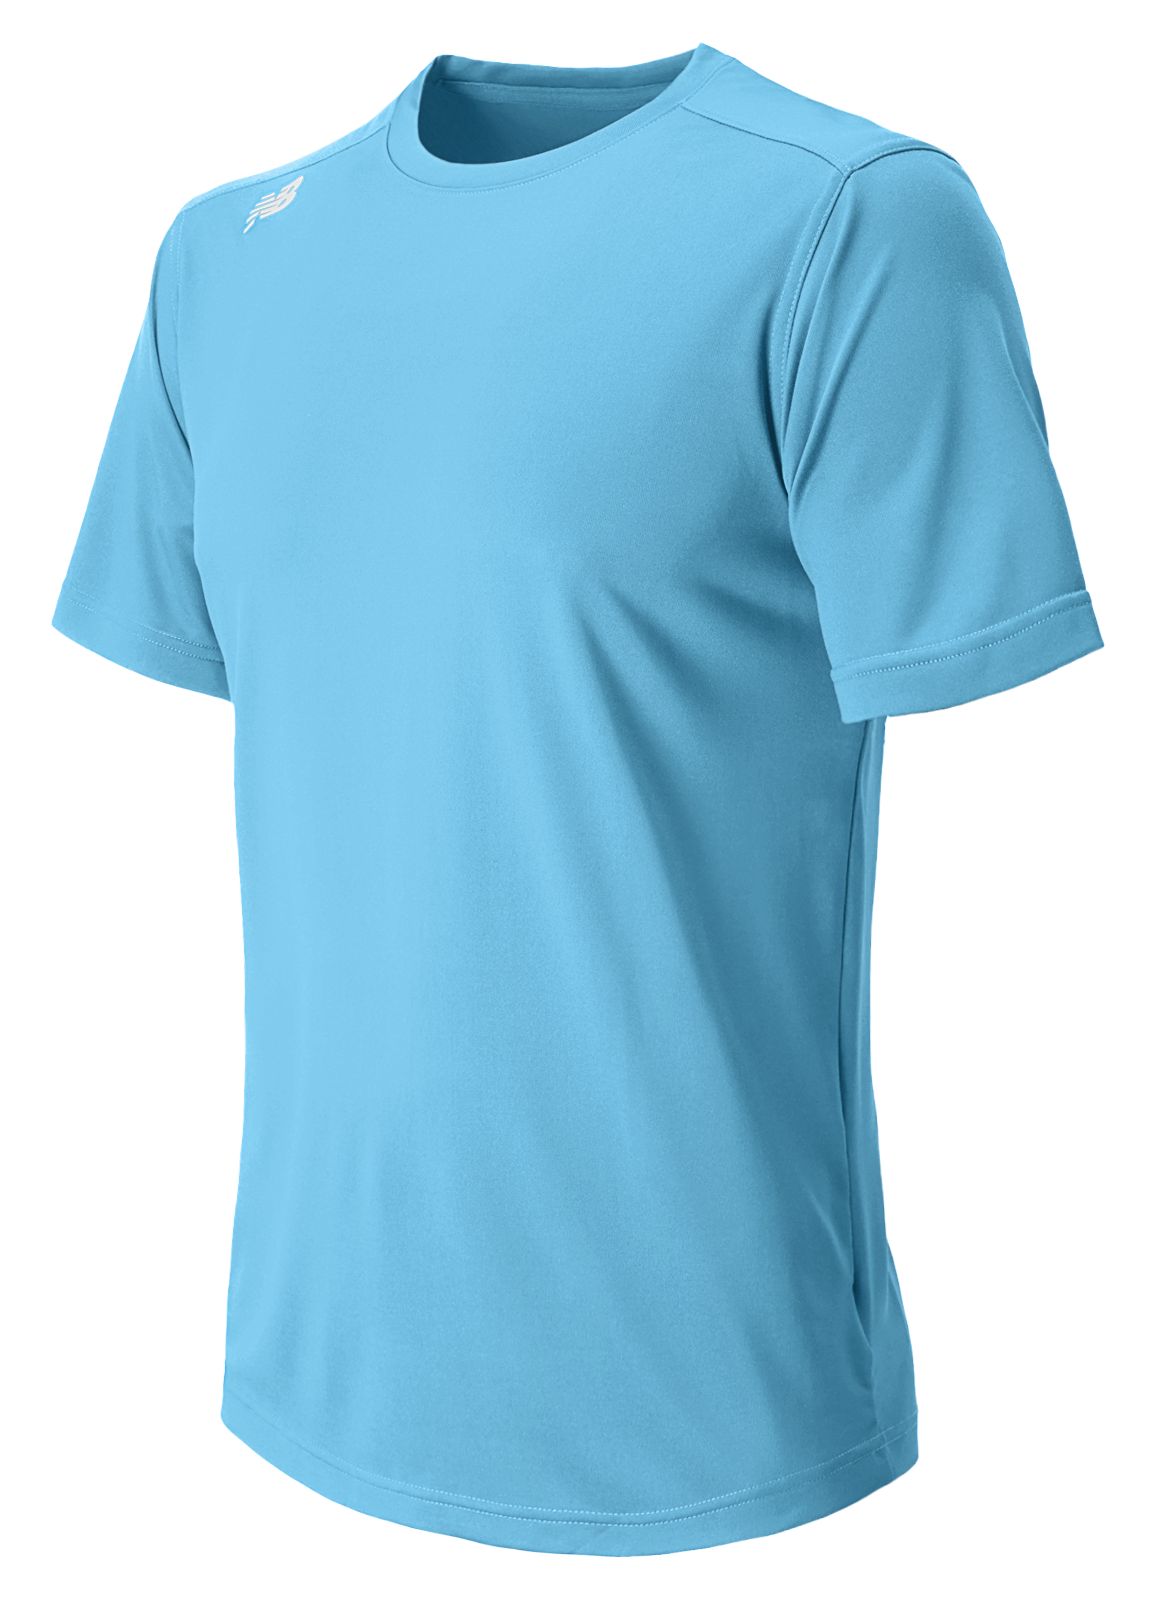 New Balance - Men's Short Sleeve T-Shirt (MT11205 REP)